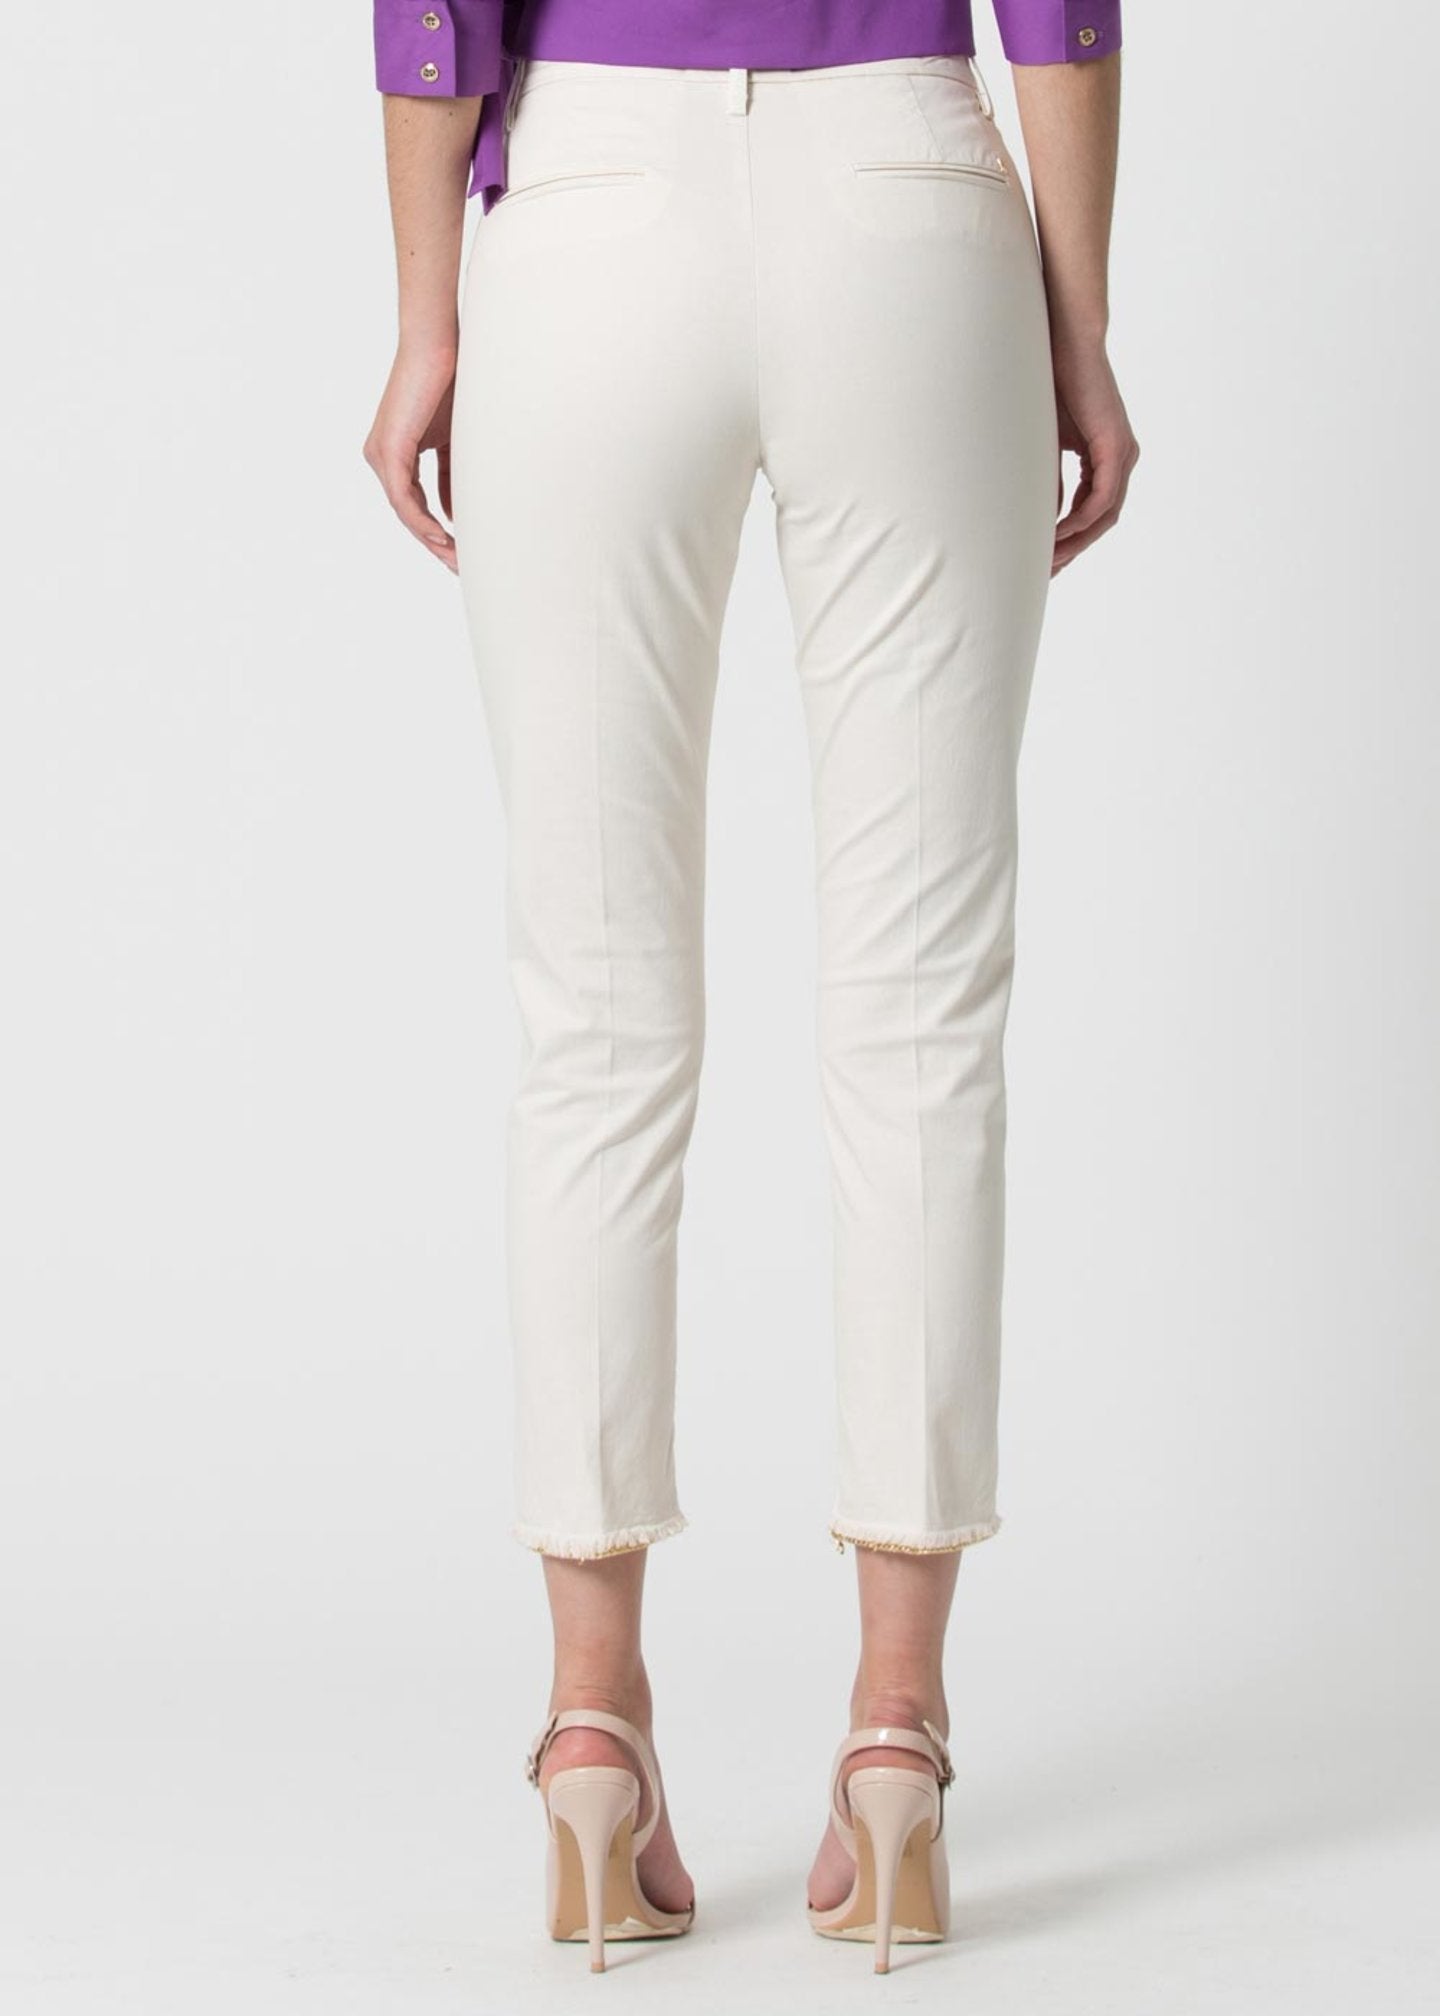 Pantalone Kocca Slim / Bianco - Ideal Moda